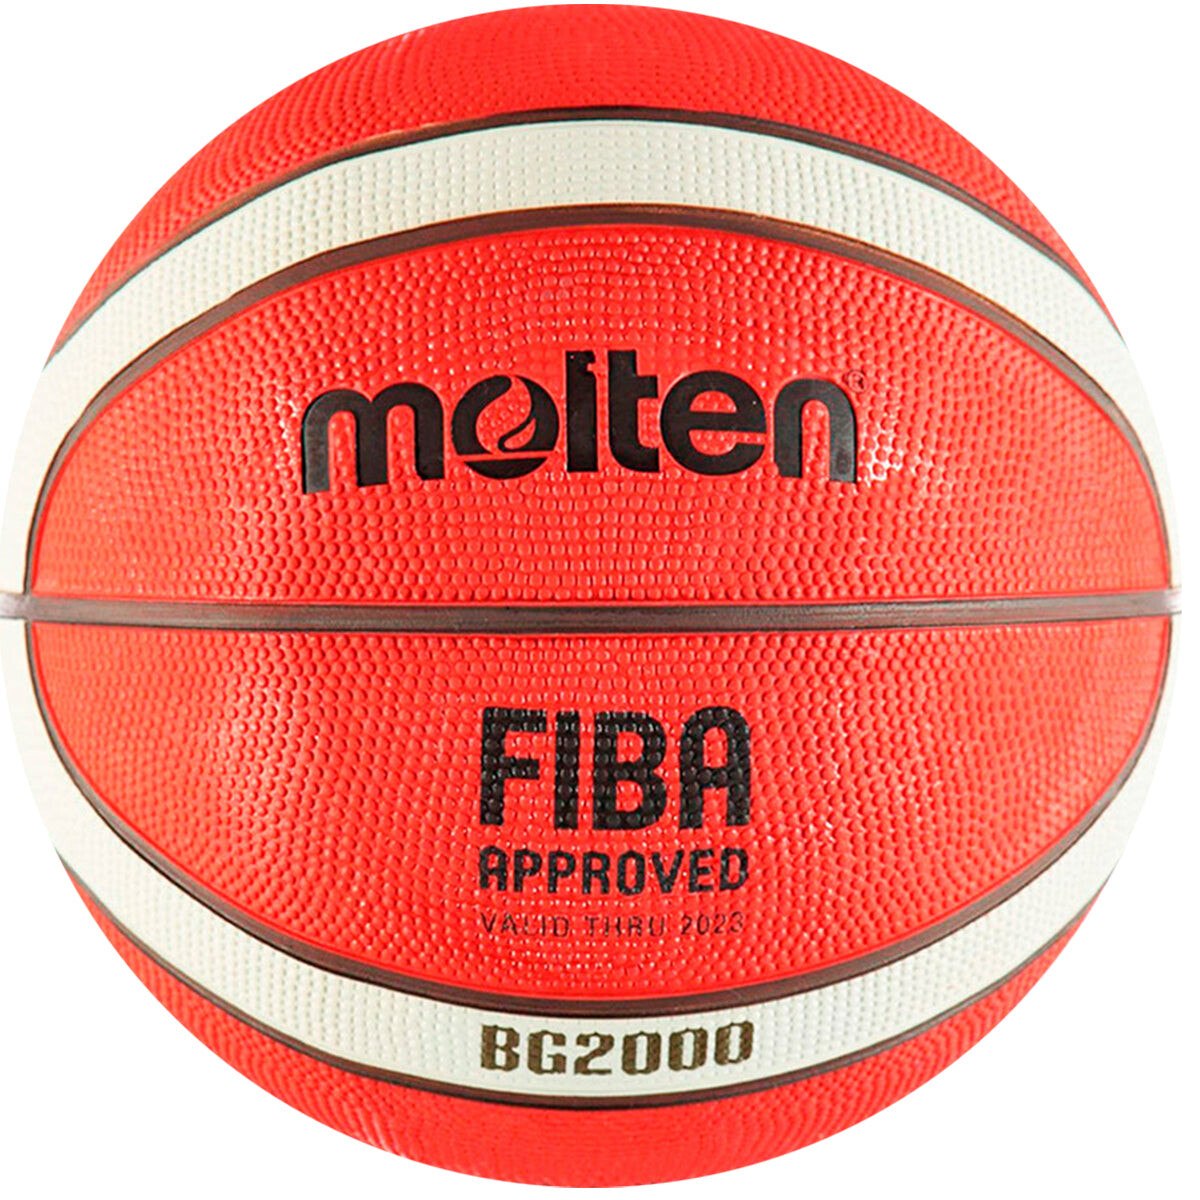 Pelota Basket Molten Gr7 Goma Nº7 Original Basquetbol 